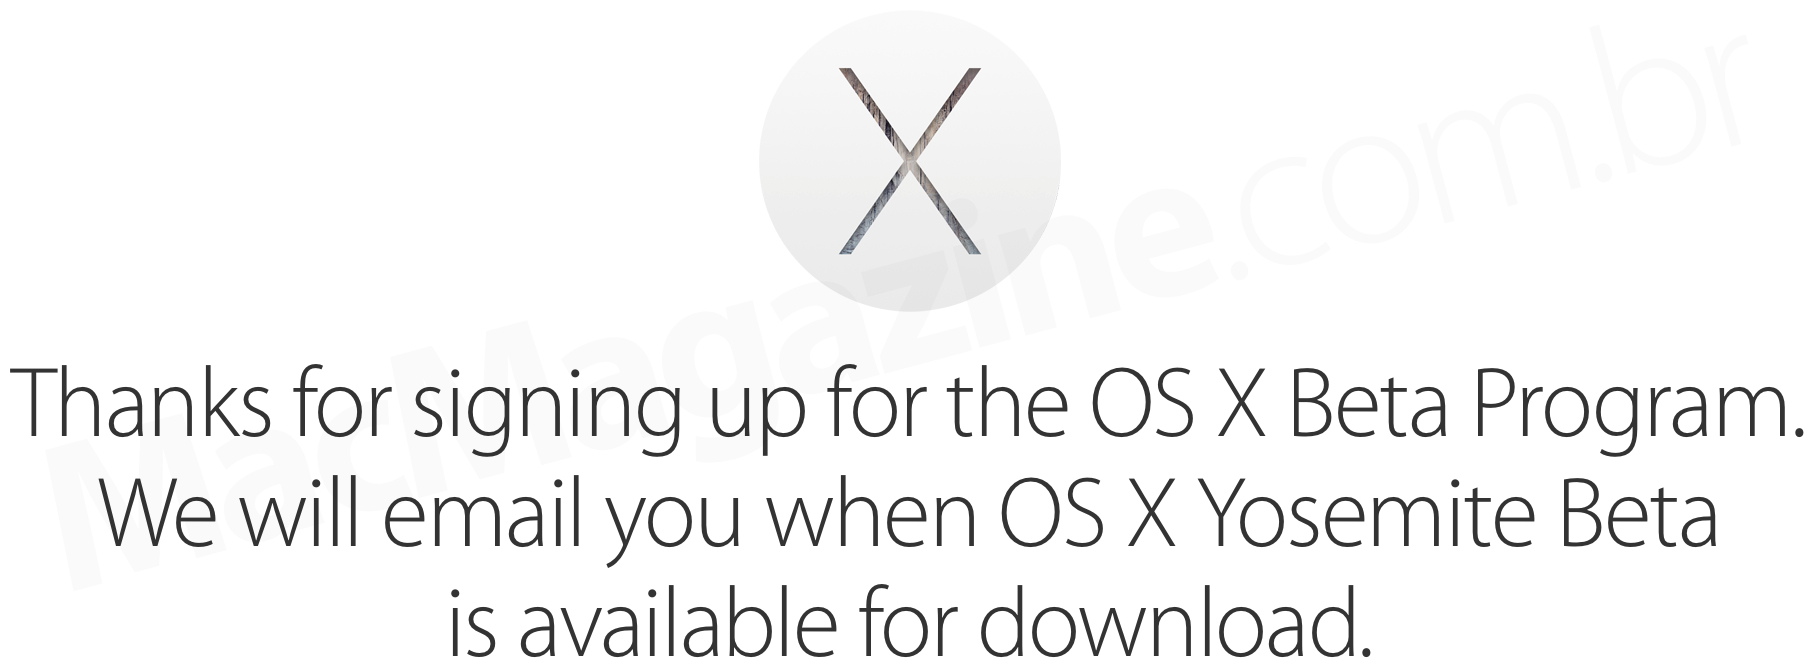 OS X Beta Program